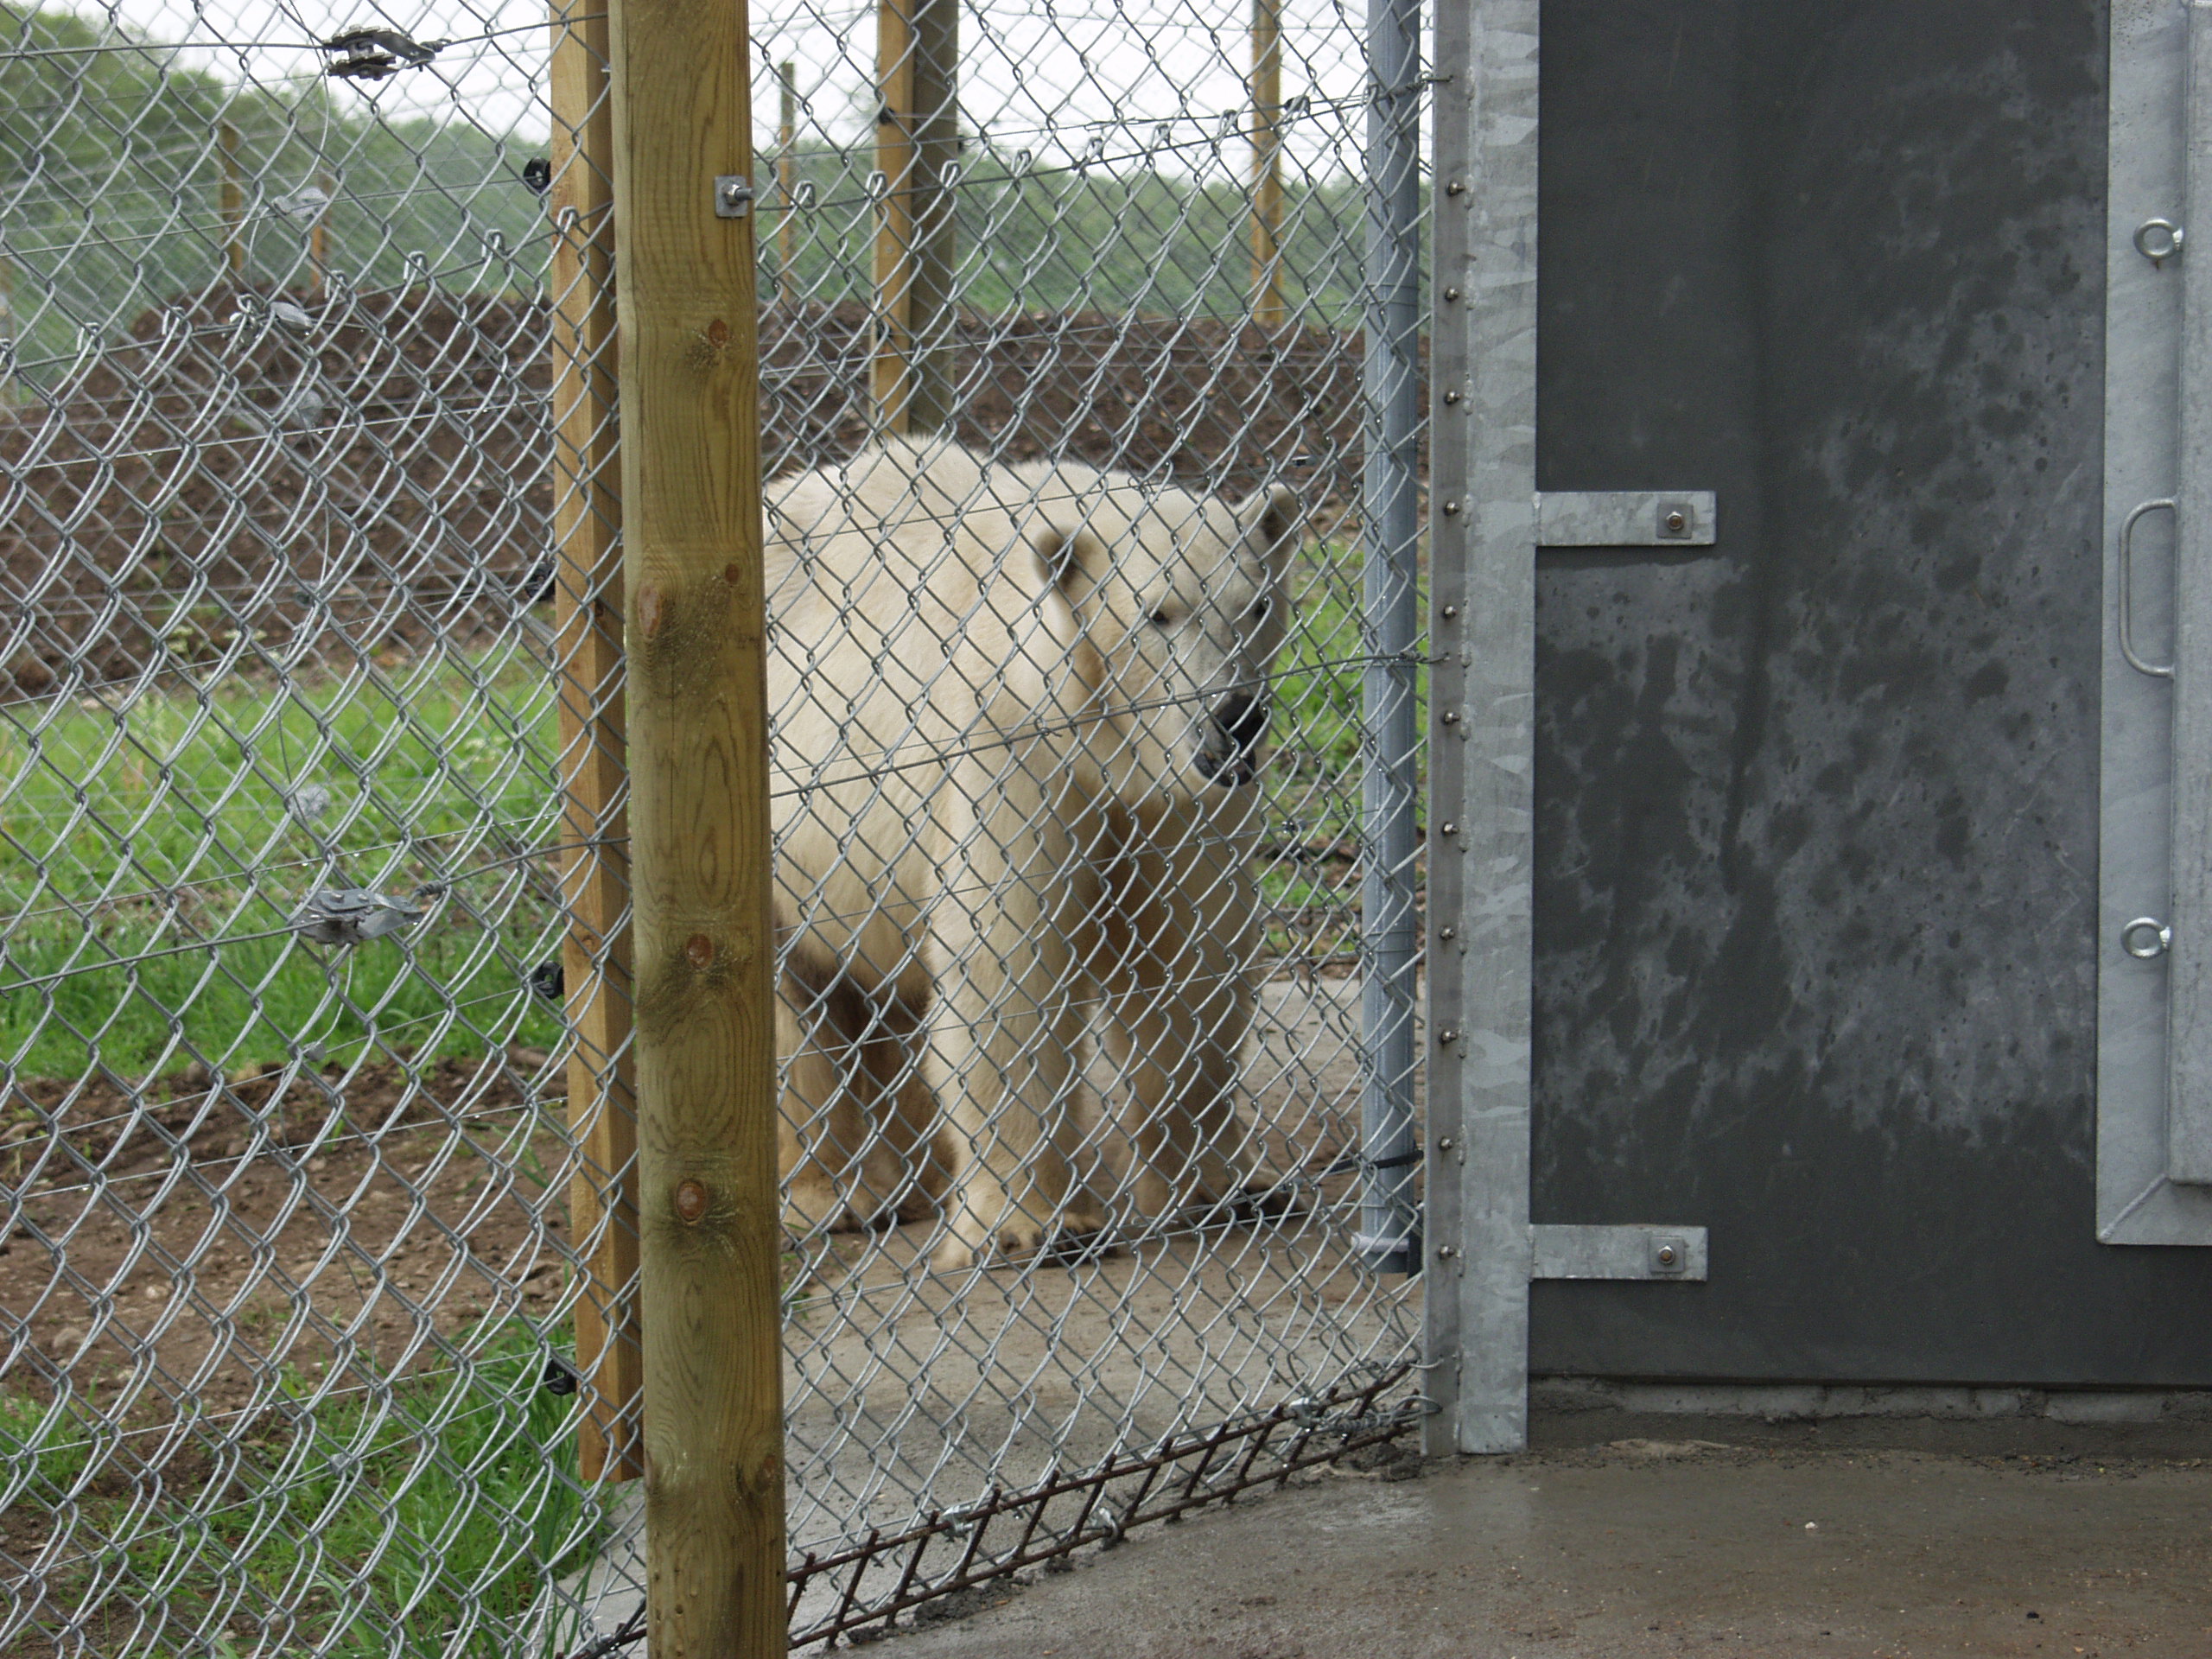 En isbjørn går trygt i sin indhegning, der består af både et elhegn og et nethegn.